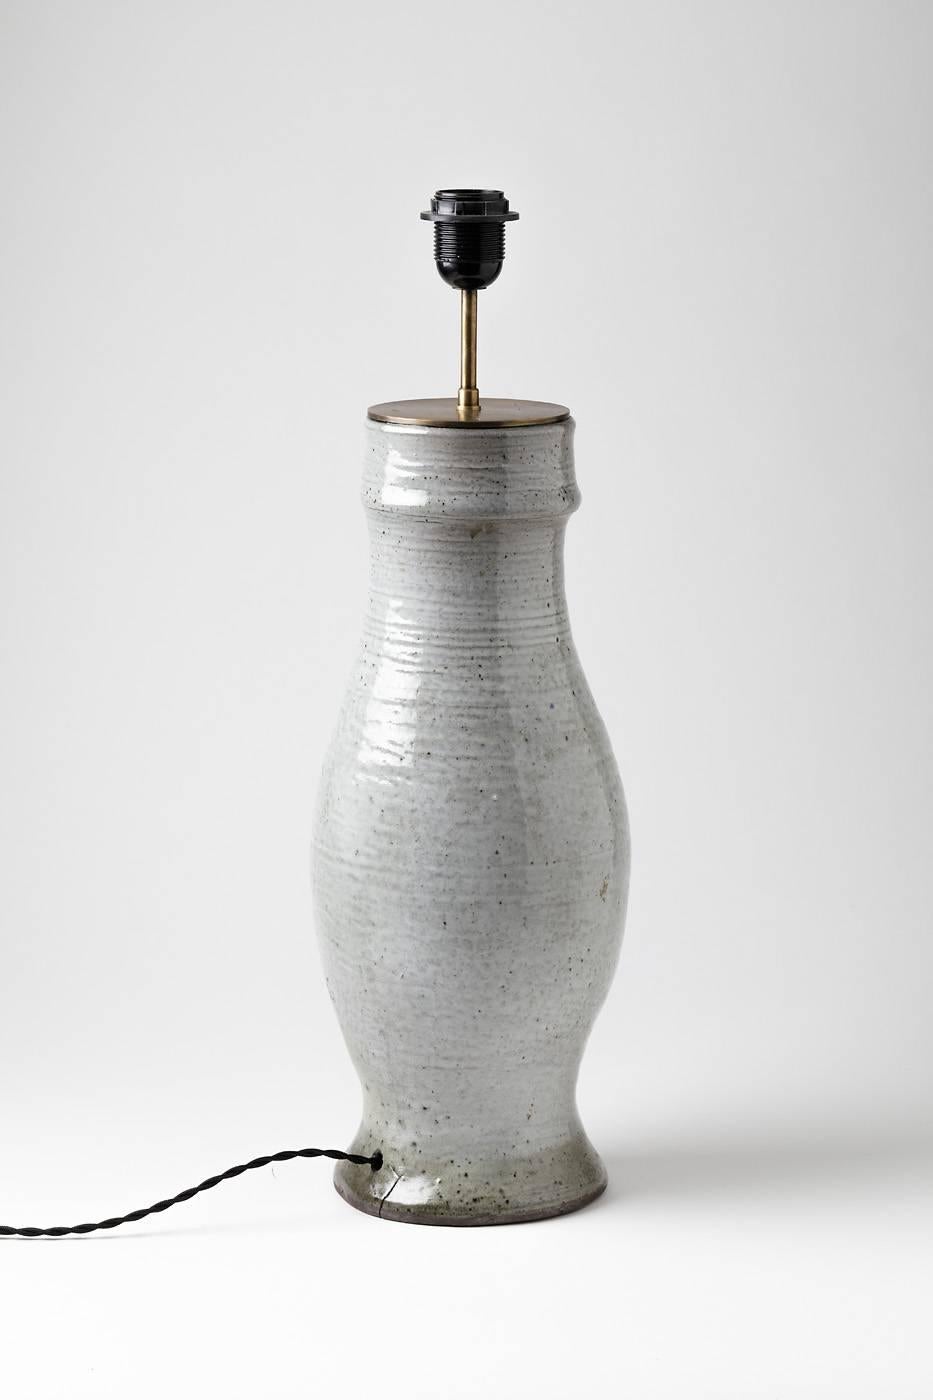 Elegante Keramiklampe von Norbert Pierlot, um 1970.

Schöne weiße Keramikglasur .

Signiert unter dem Sockel 